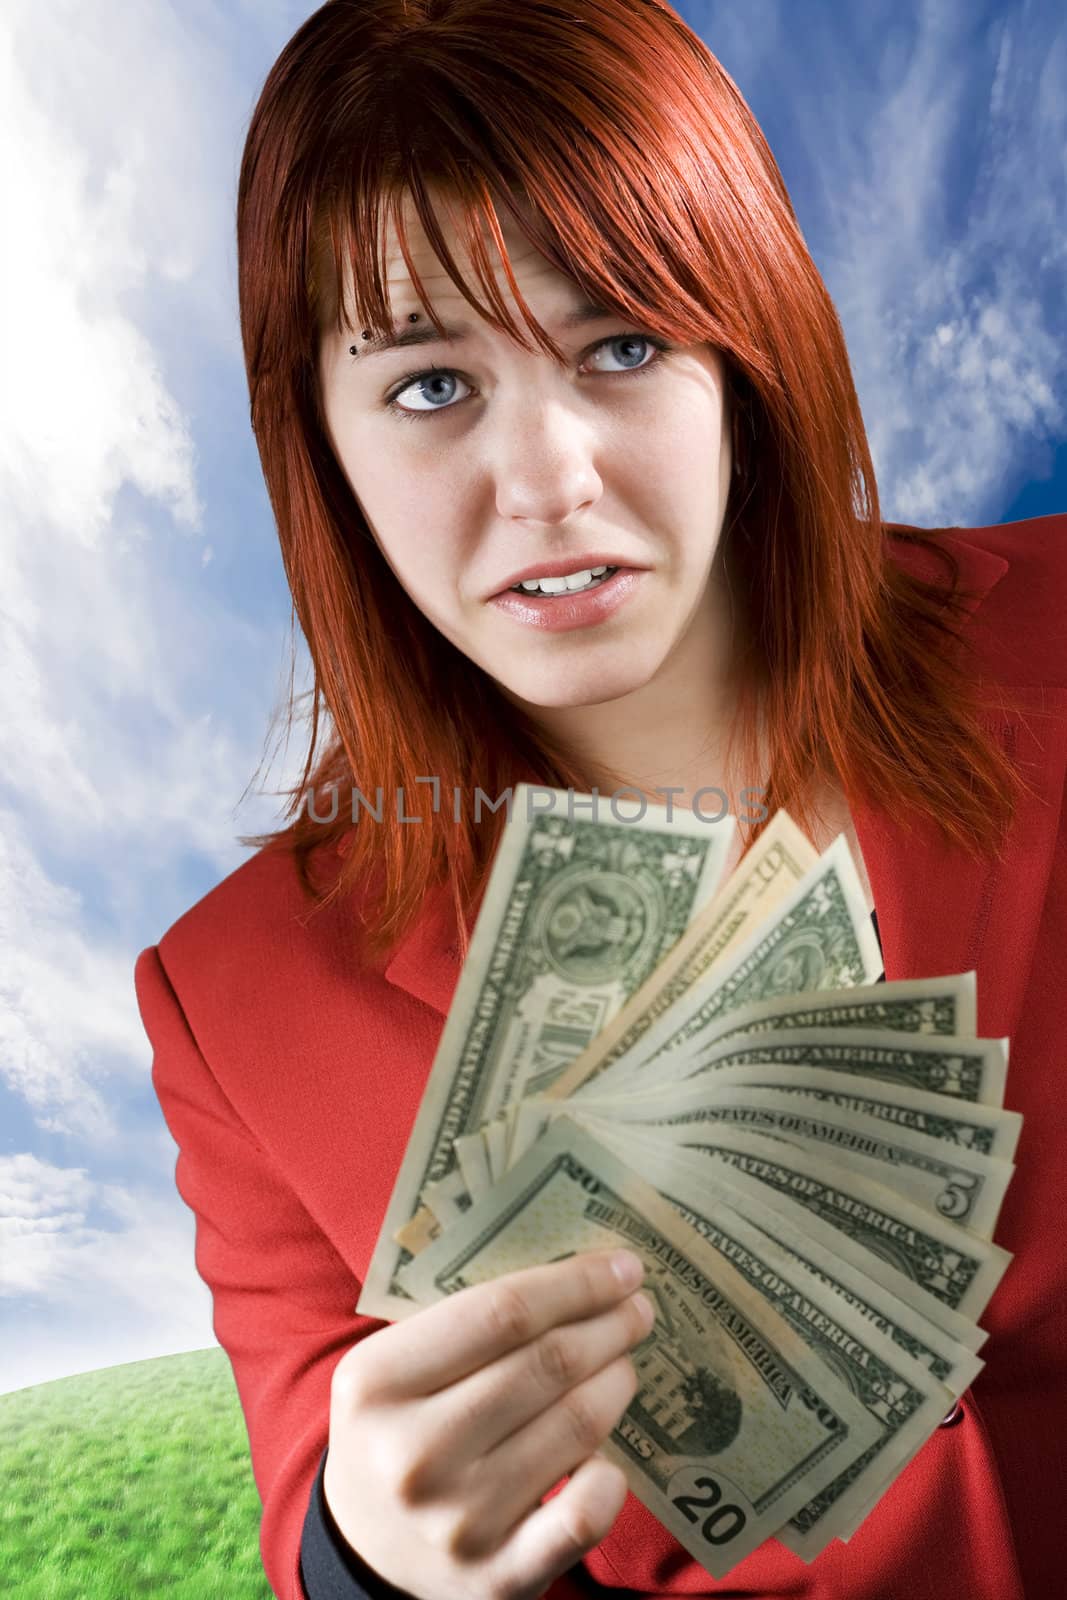 Surprised girl waving American dollars by domencolja